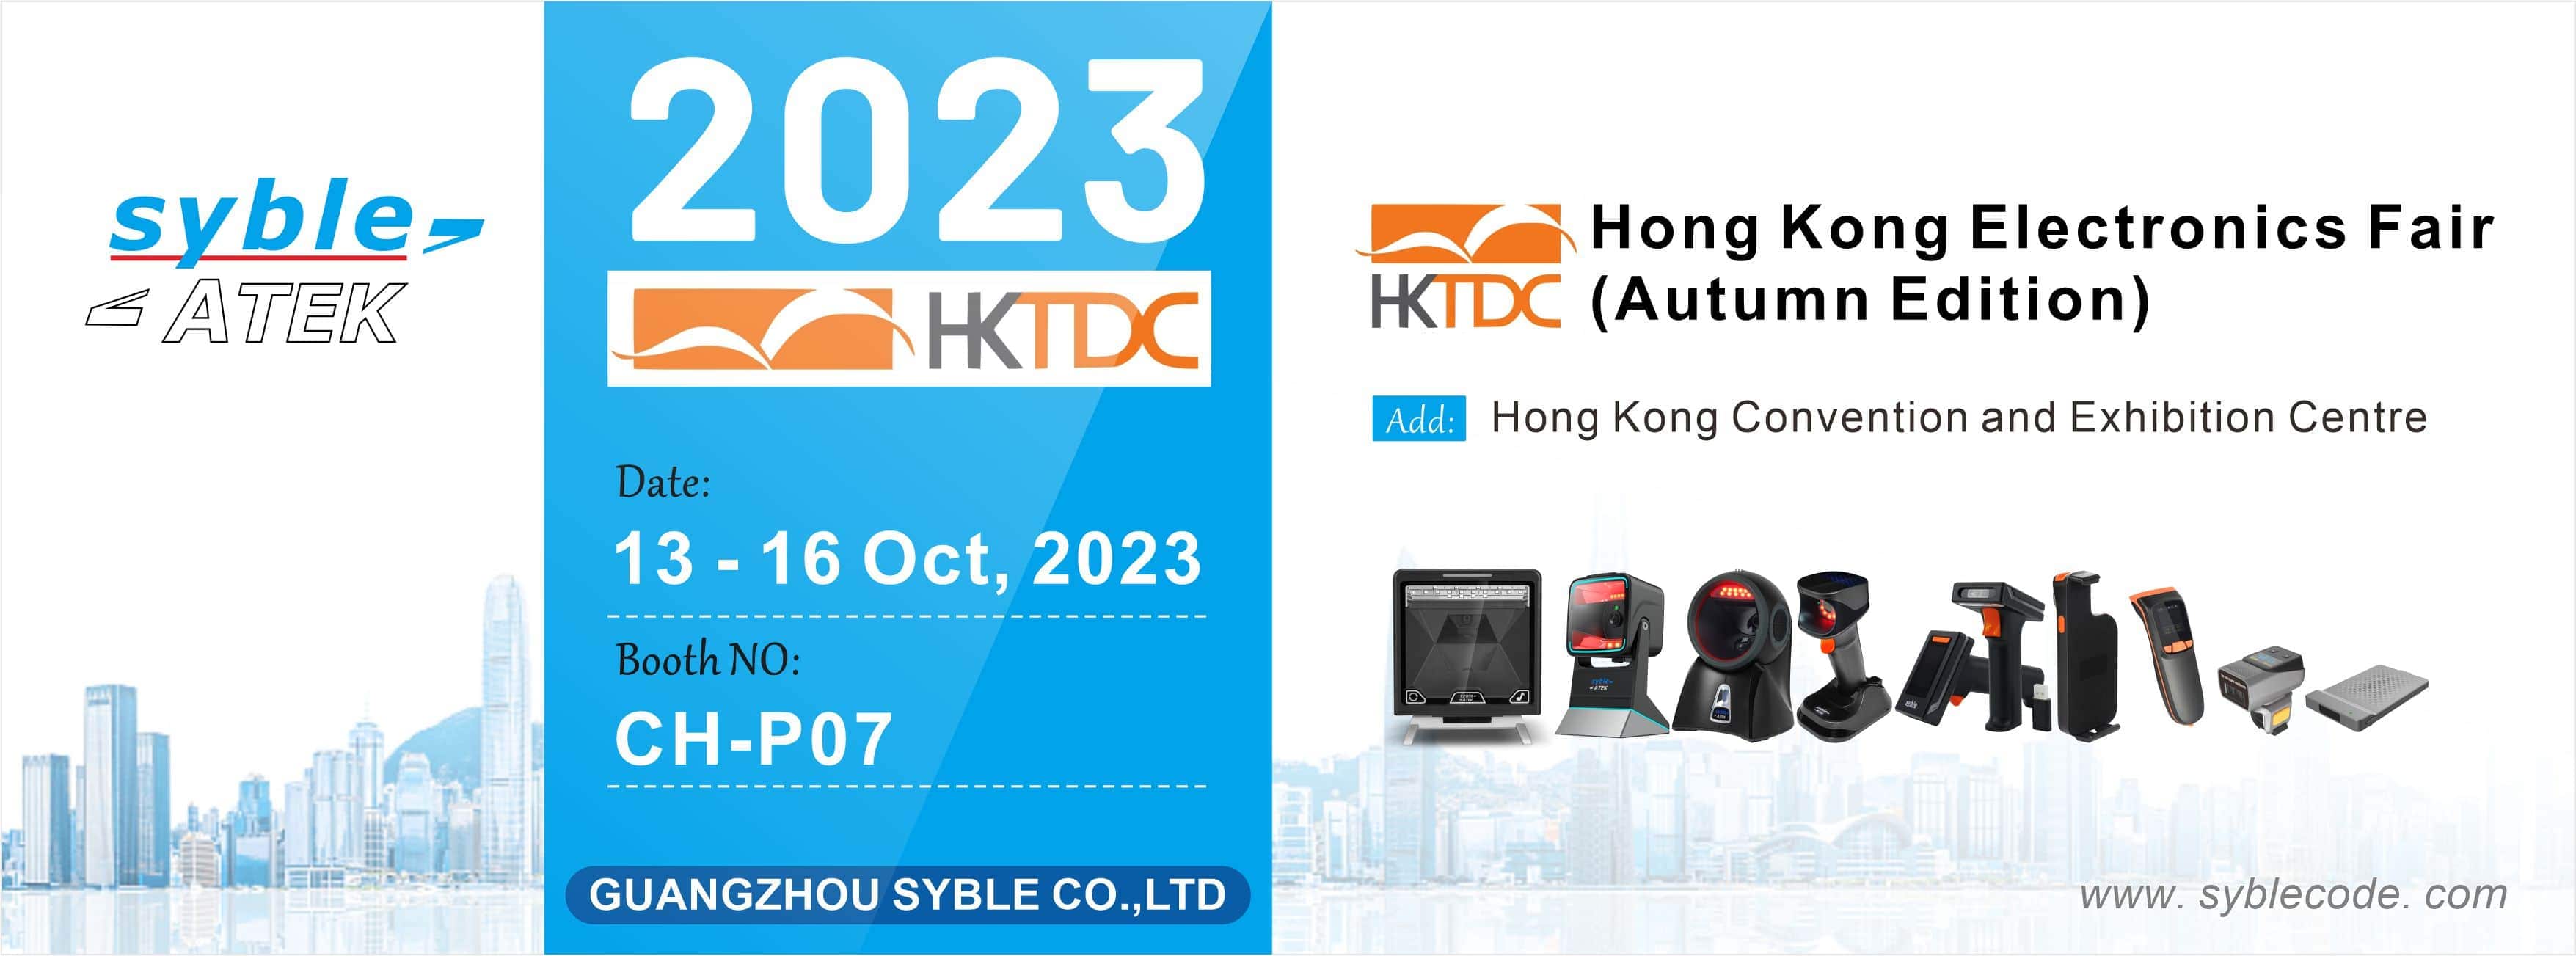 Syble Invitation of Hong Kong Electronic Fair 2023